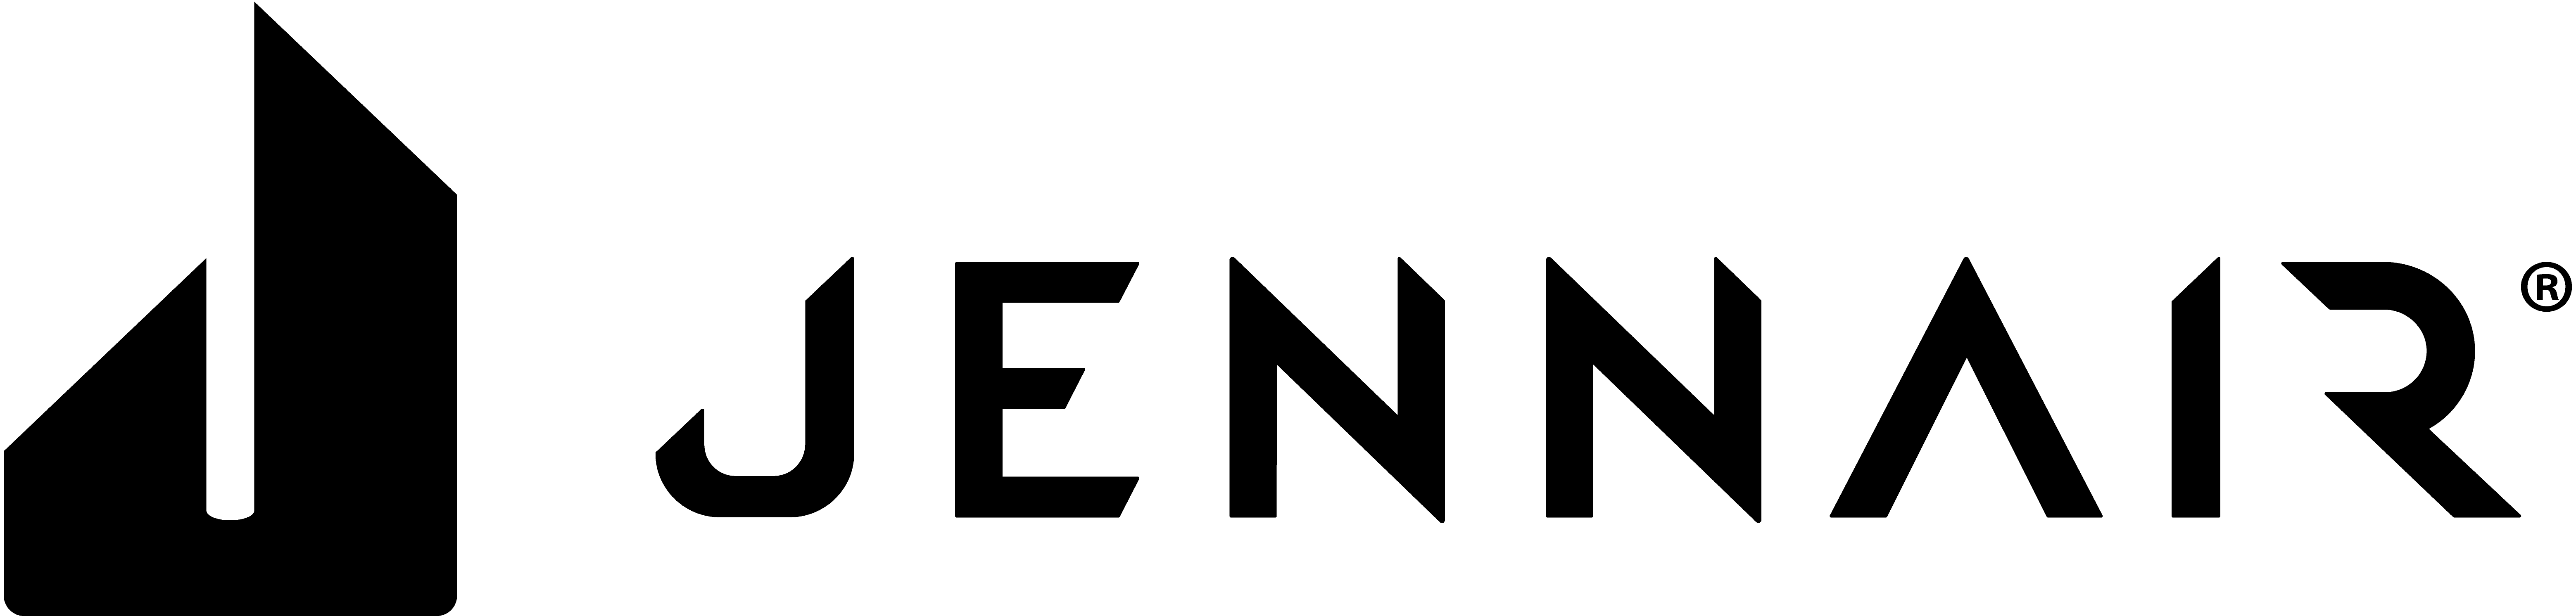 JennAir Brand Logo